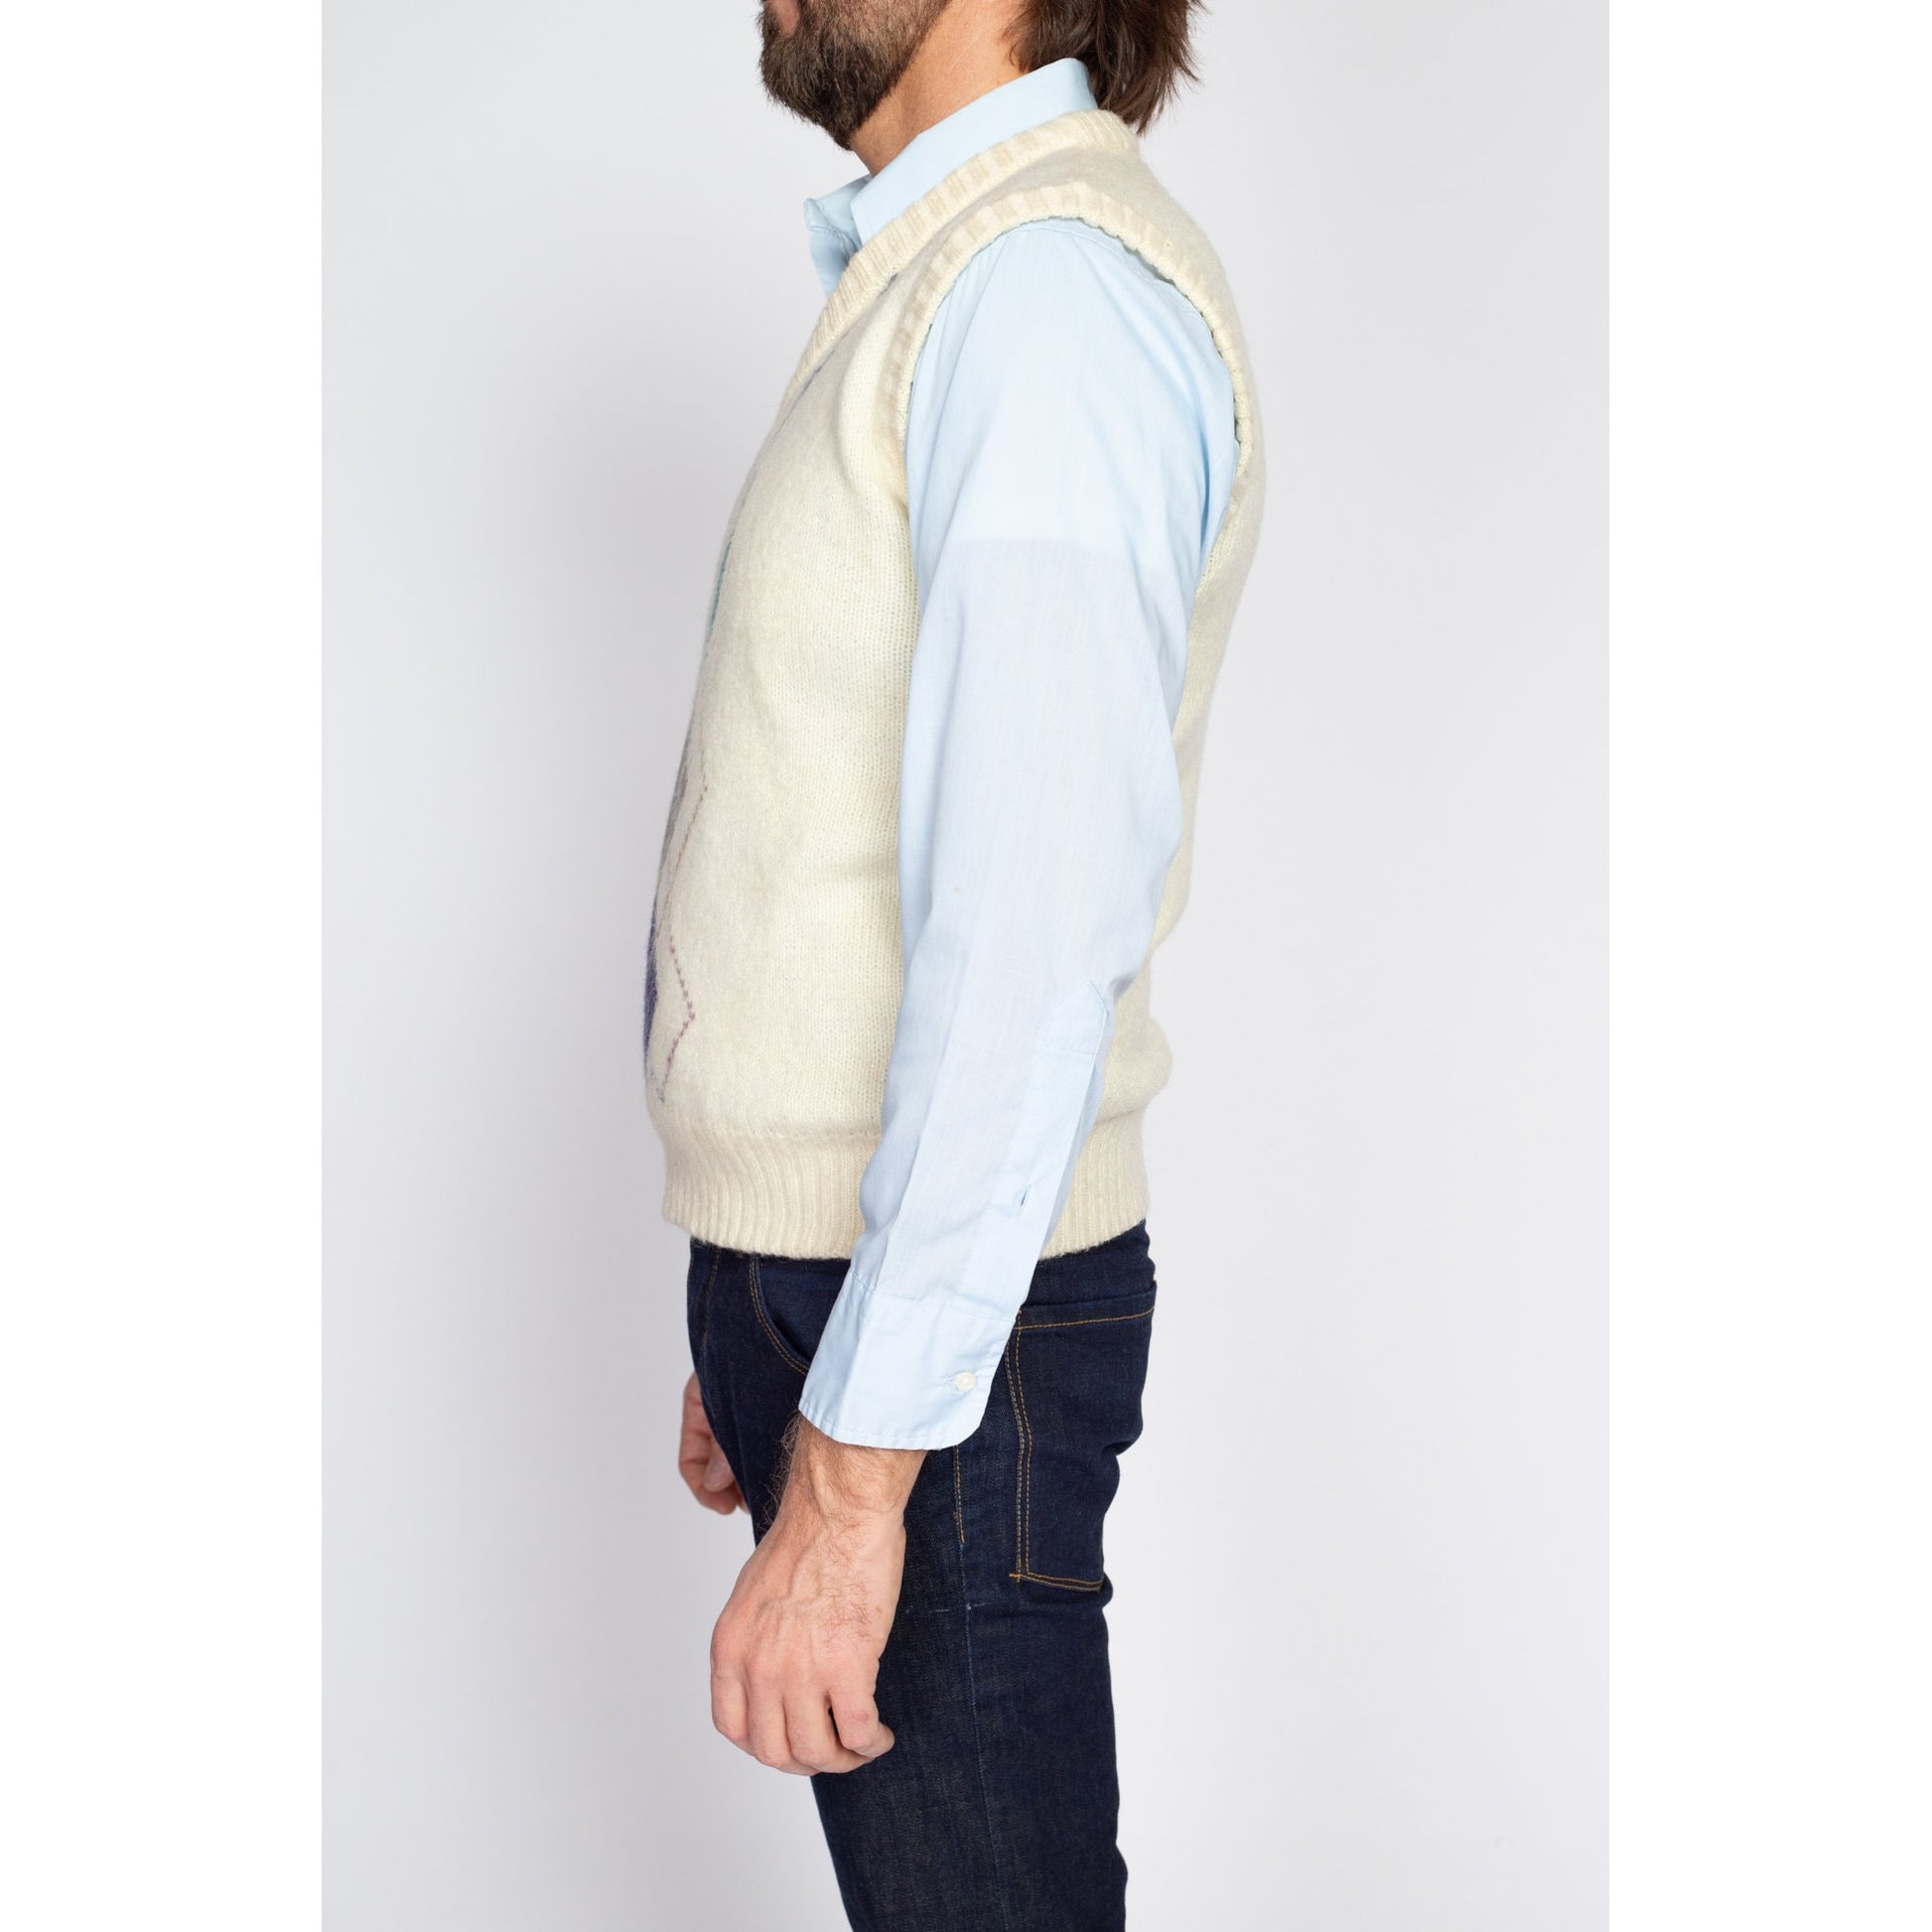 Medium 80s Argyle Mohair Blend Sweater Vest | Vintage Adam Sloane Cream V Neck Sleeveless Knit Pullover